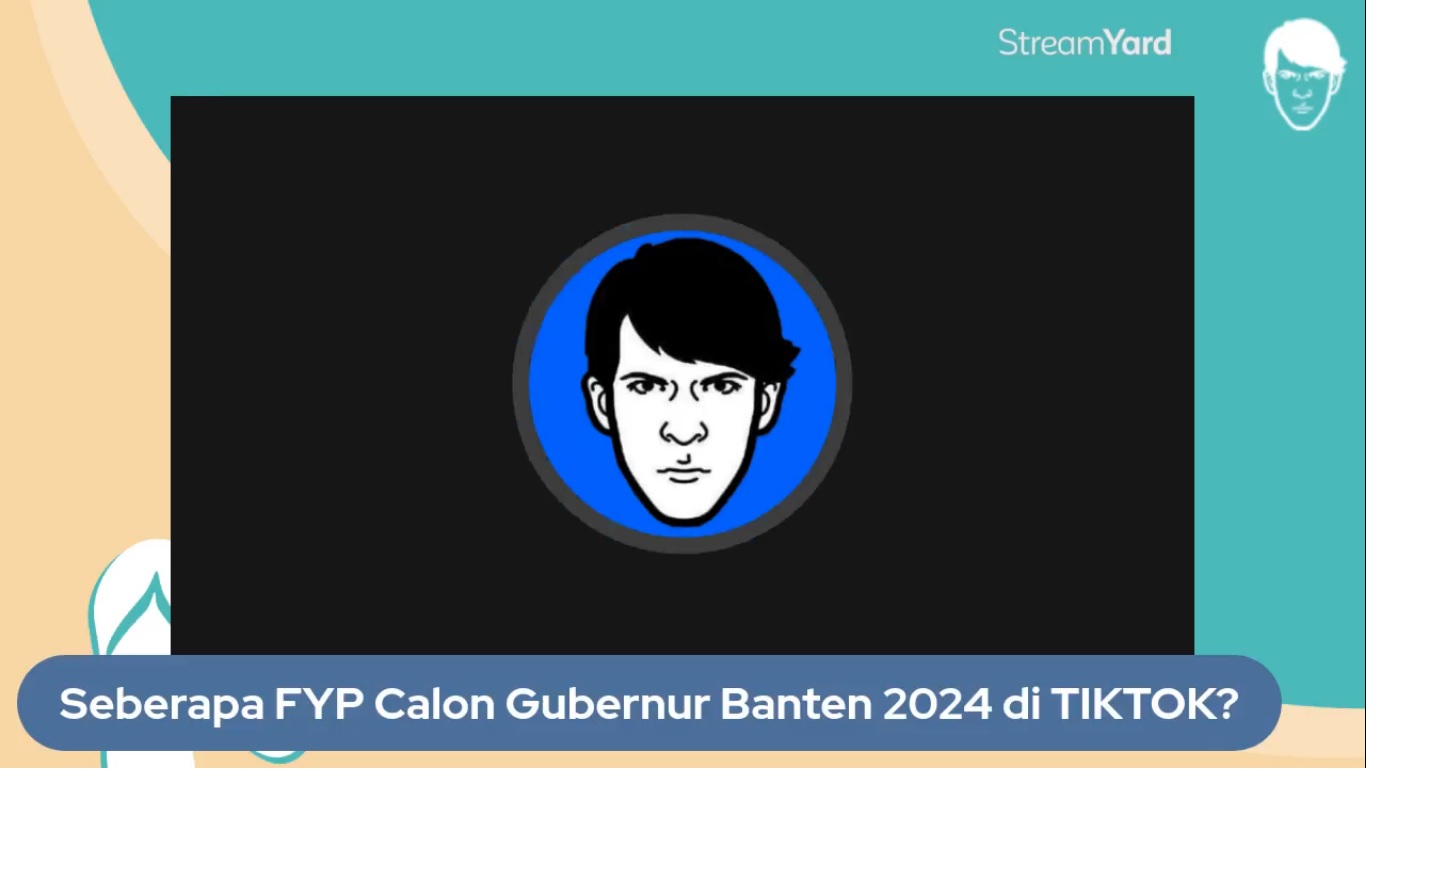 Seberapa FYP Calon Gubernur Banten 2024 di TIKTOK?